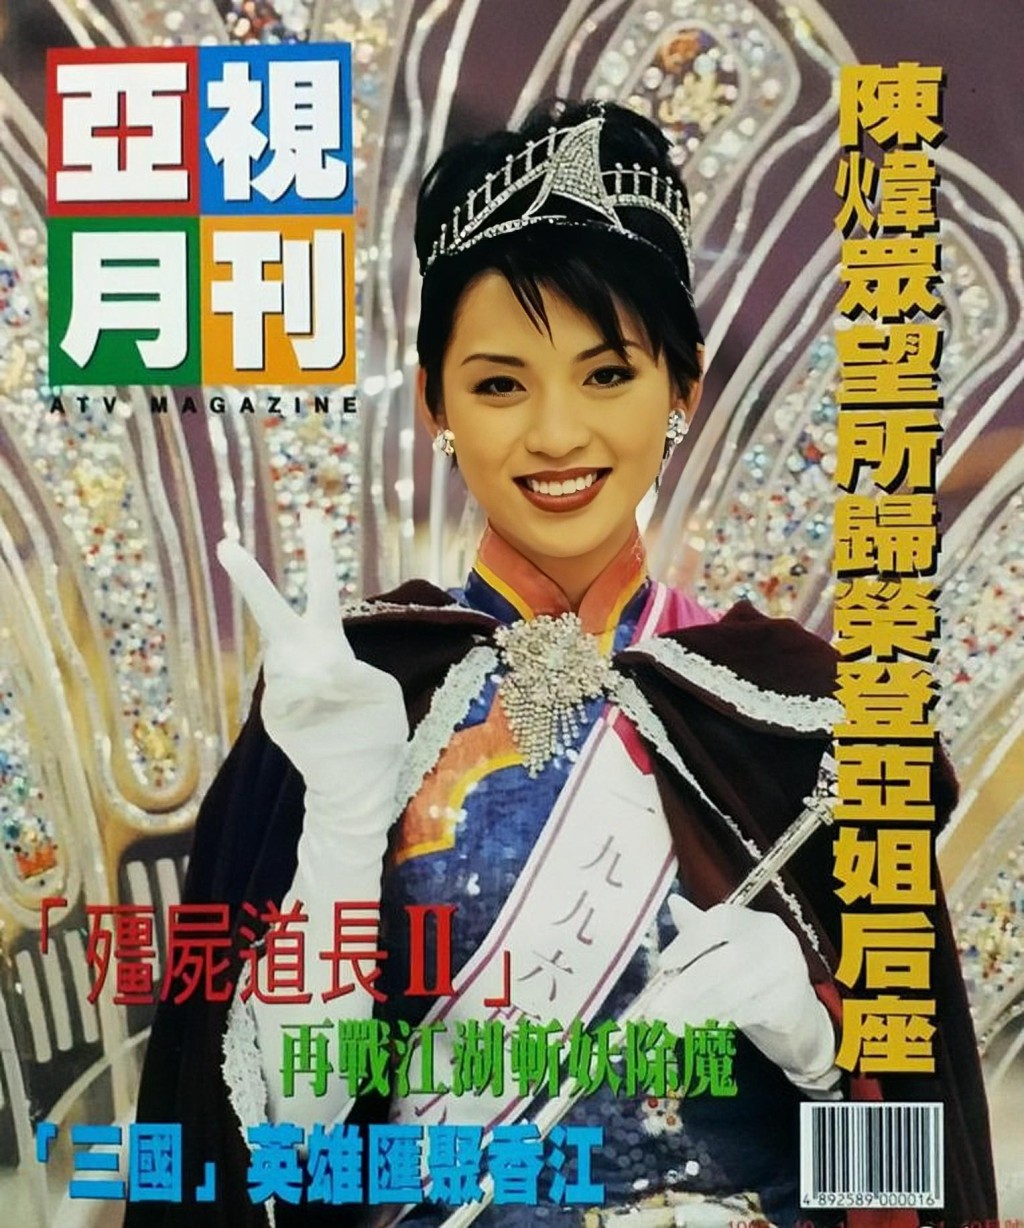 近日有網民於facebook專頁「90年代回憶」分享一張亞視月刊的封面照。